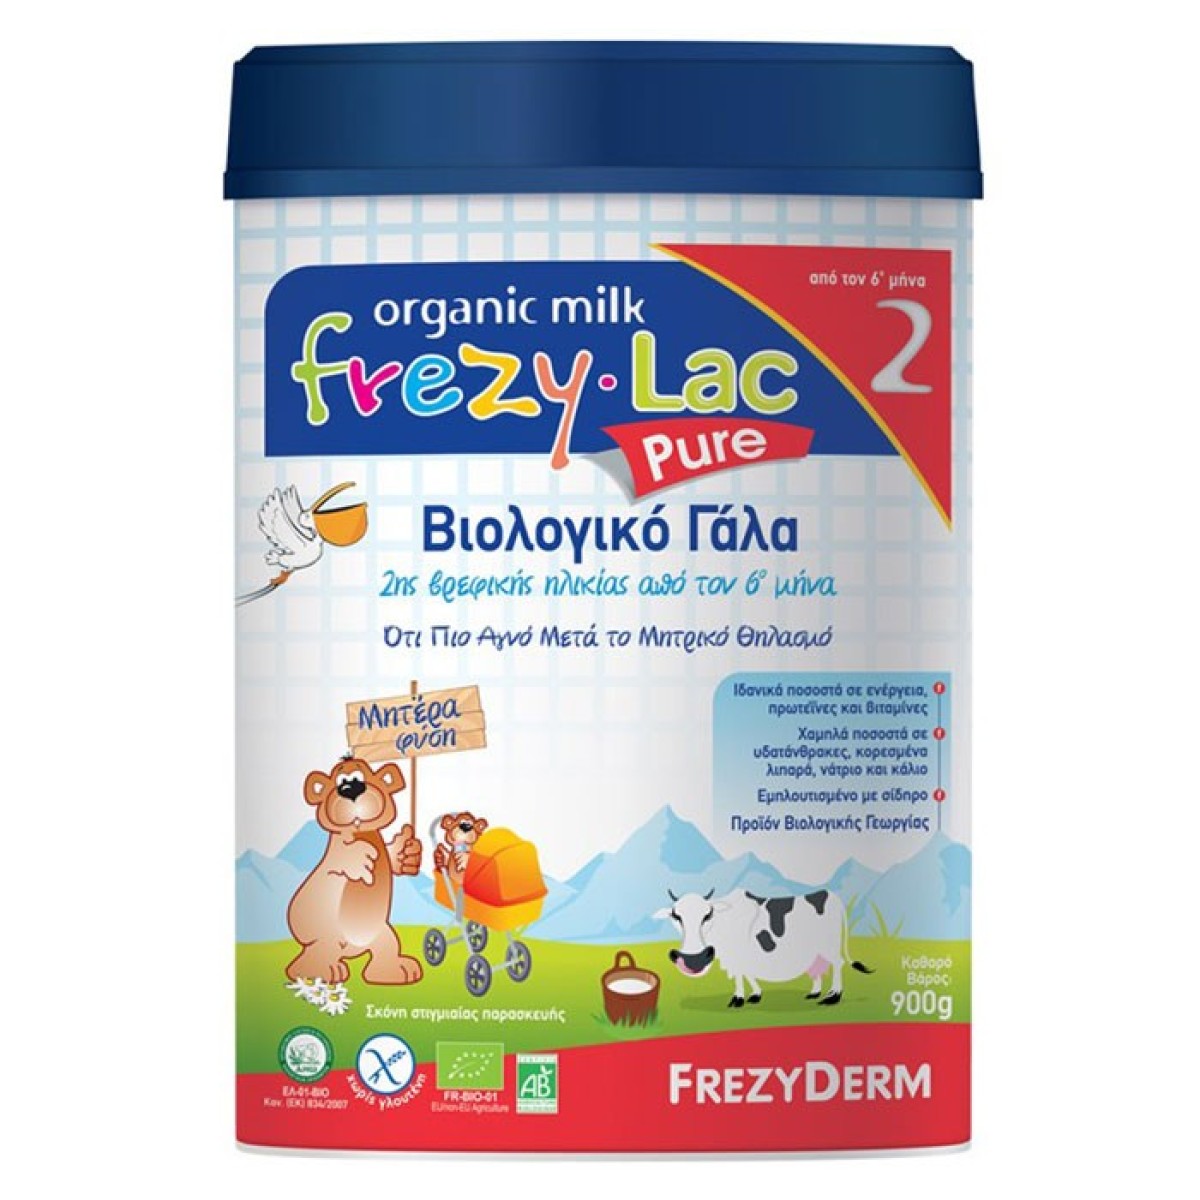 Frezy-Lac| Organic Milk Pure 2 | Βιολογικό Γάλα 2ης Βρεφικής Ηλικίας από τον 6ο  Μήνα | 900gr